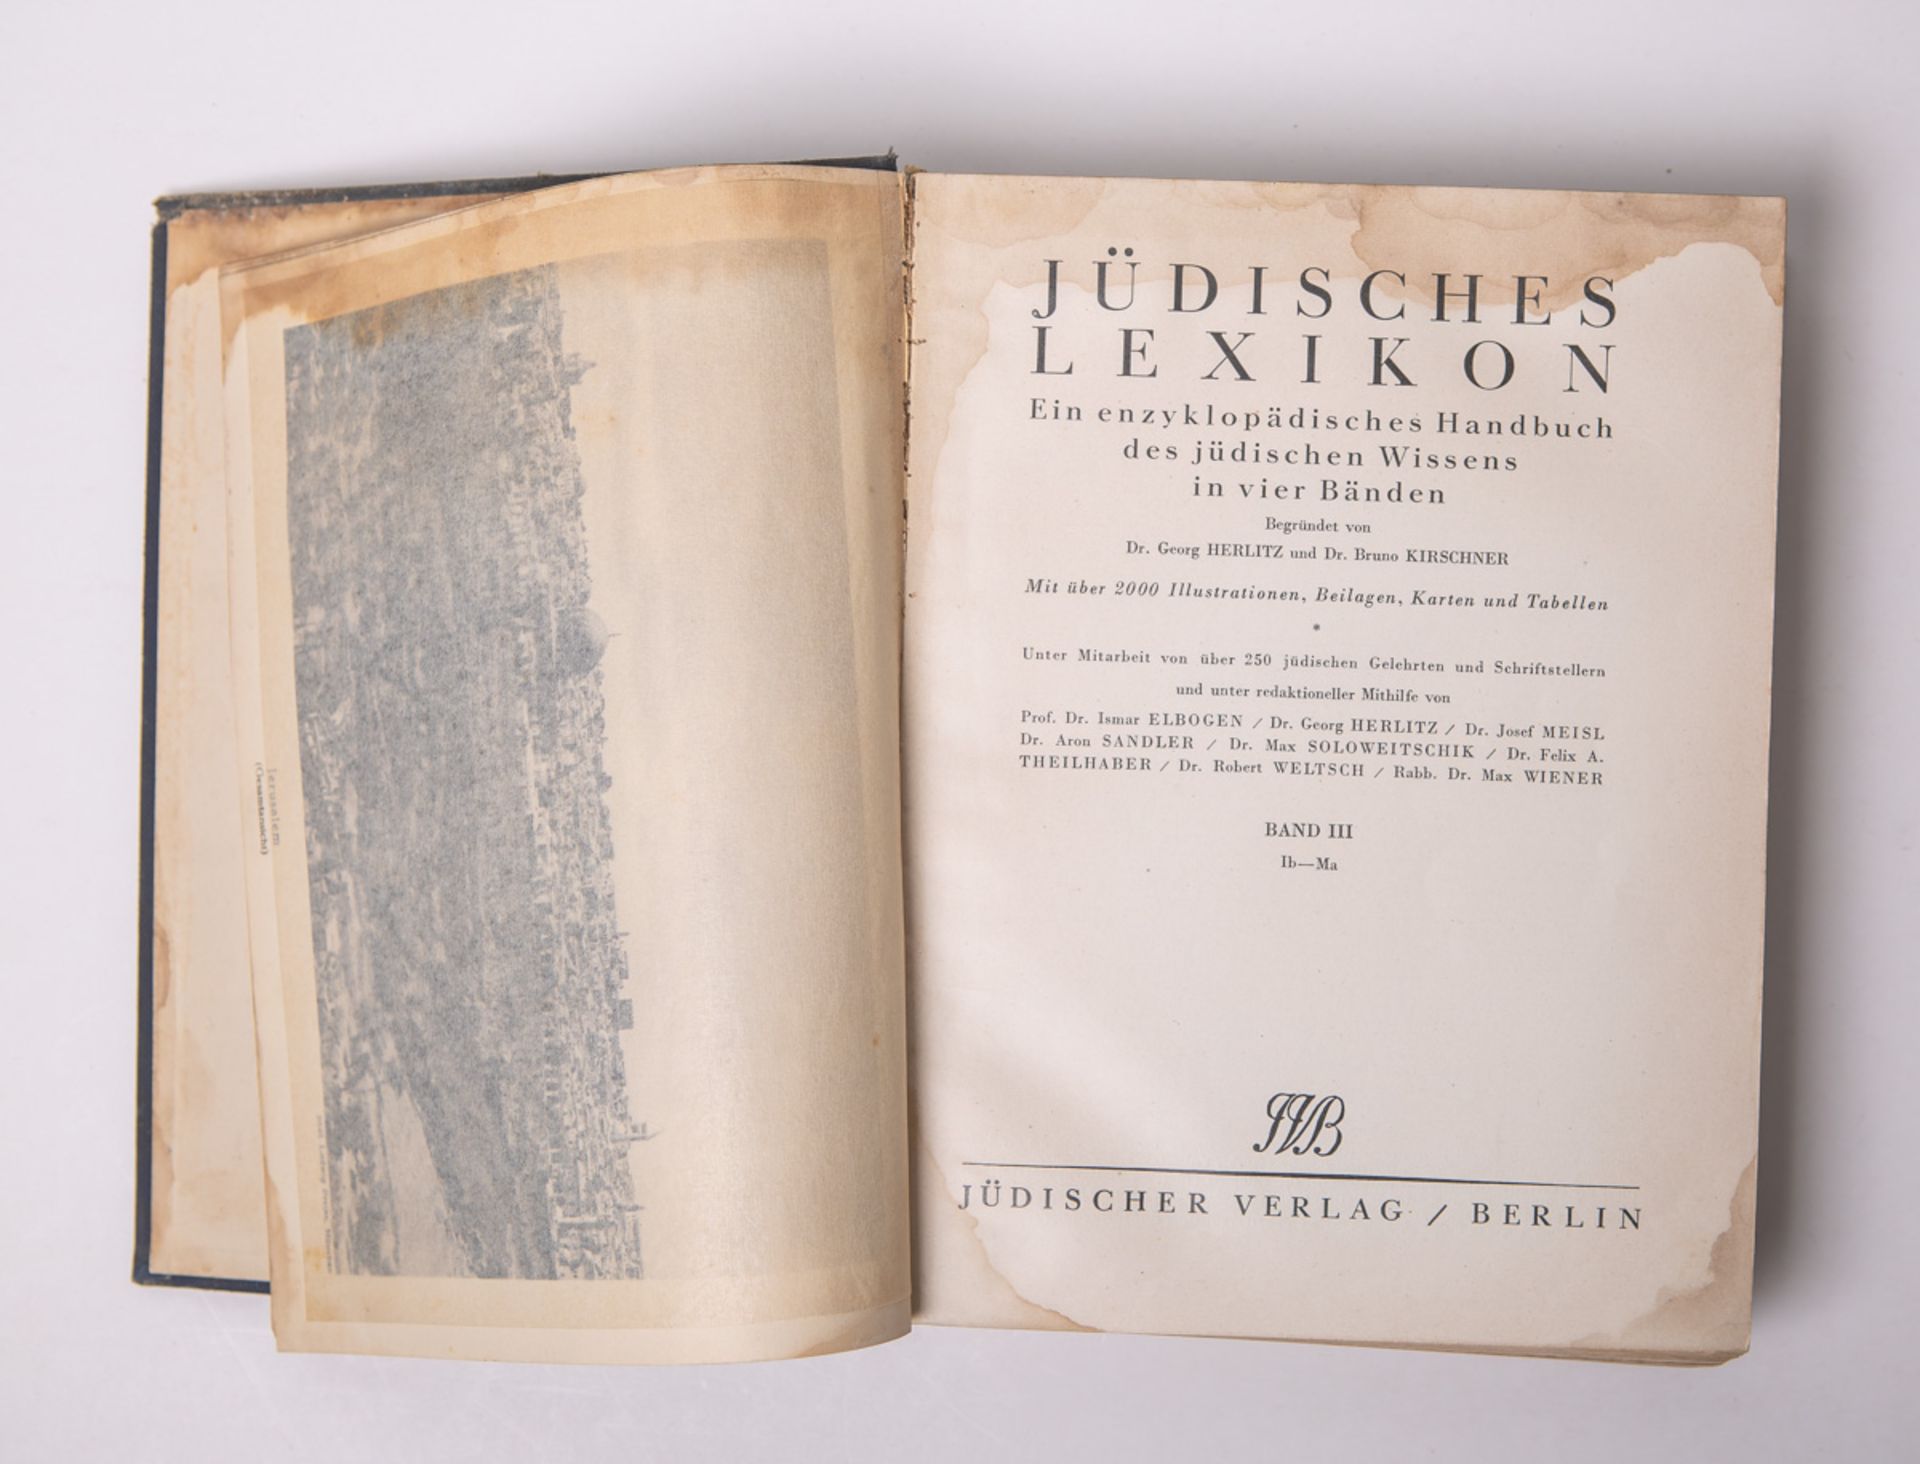 Jüdisches Lexikon, ein enzyklopädisches Handbuch des jüdischen Wissens in 4 Bänden, Band III (Lb-Ma)